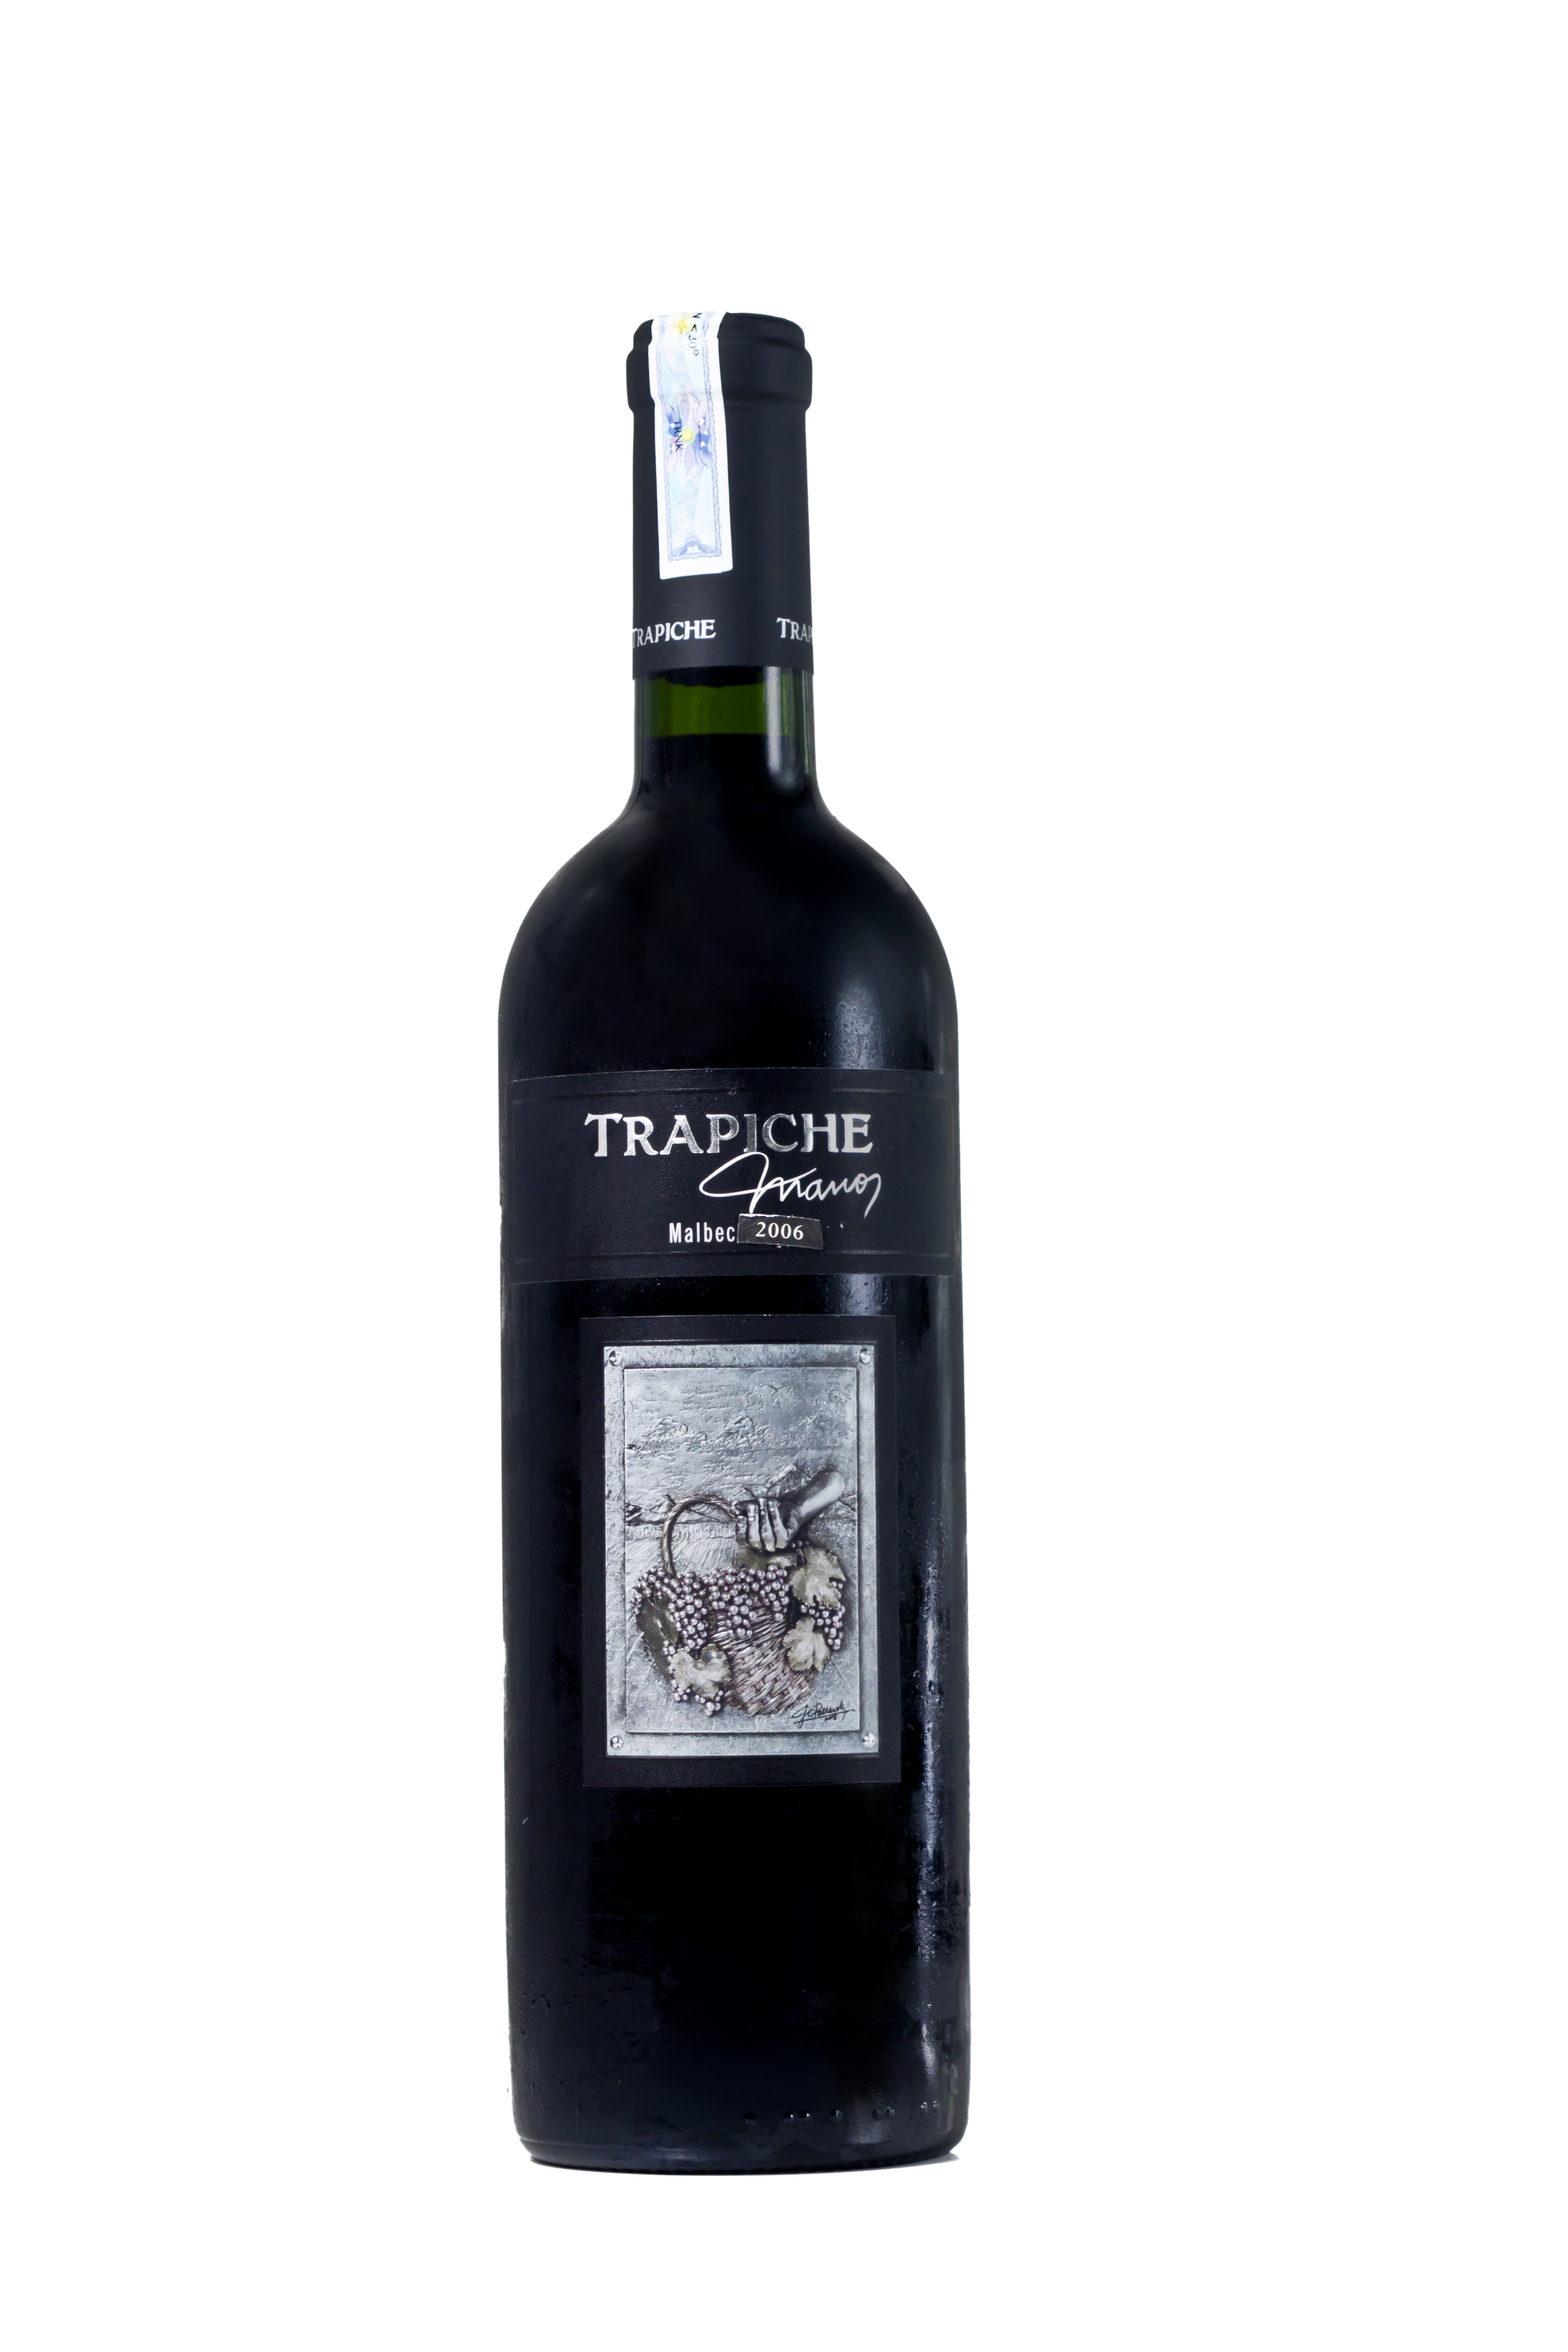 Trapiche Manos 2006 - Rượu vang Argentina nhập khẩu